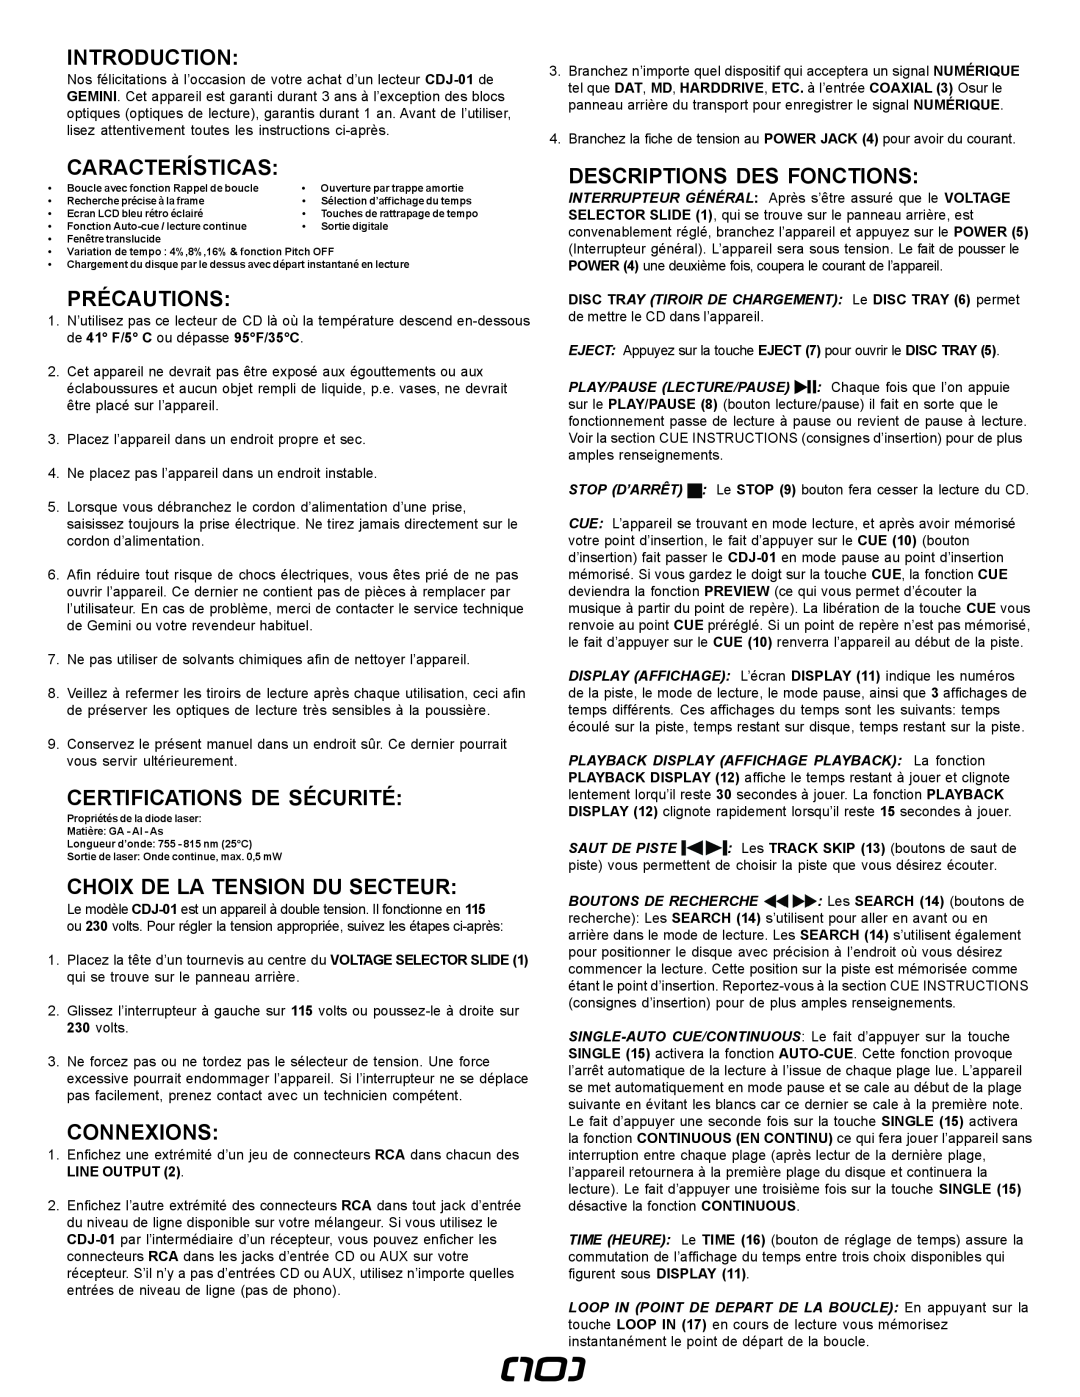 Gemini CDJ-0I manual Précautions, Certifications De Sécurité, Choix De La Tension Du Secteur, Connexions, Introduction 